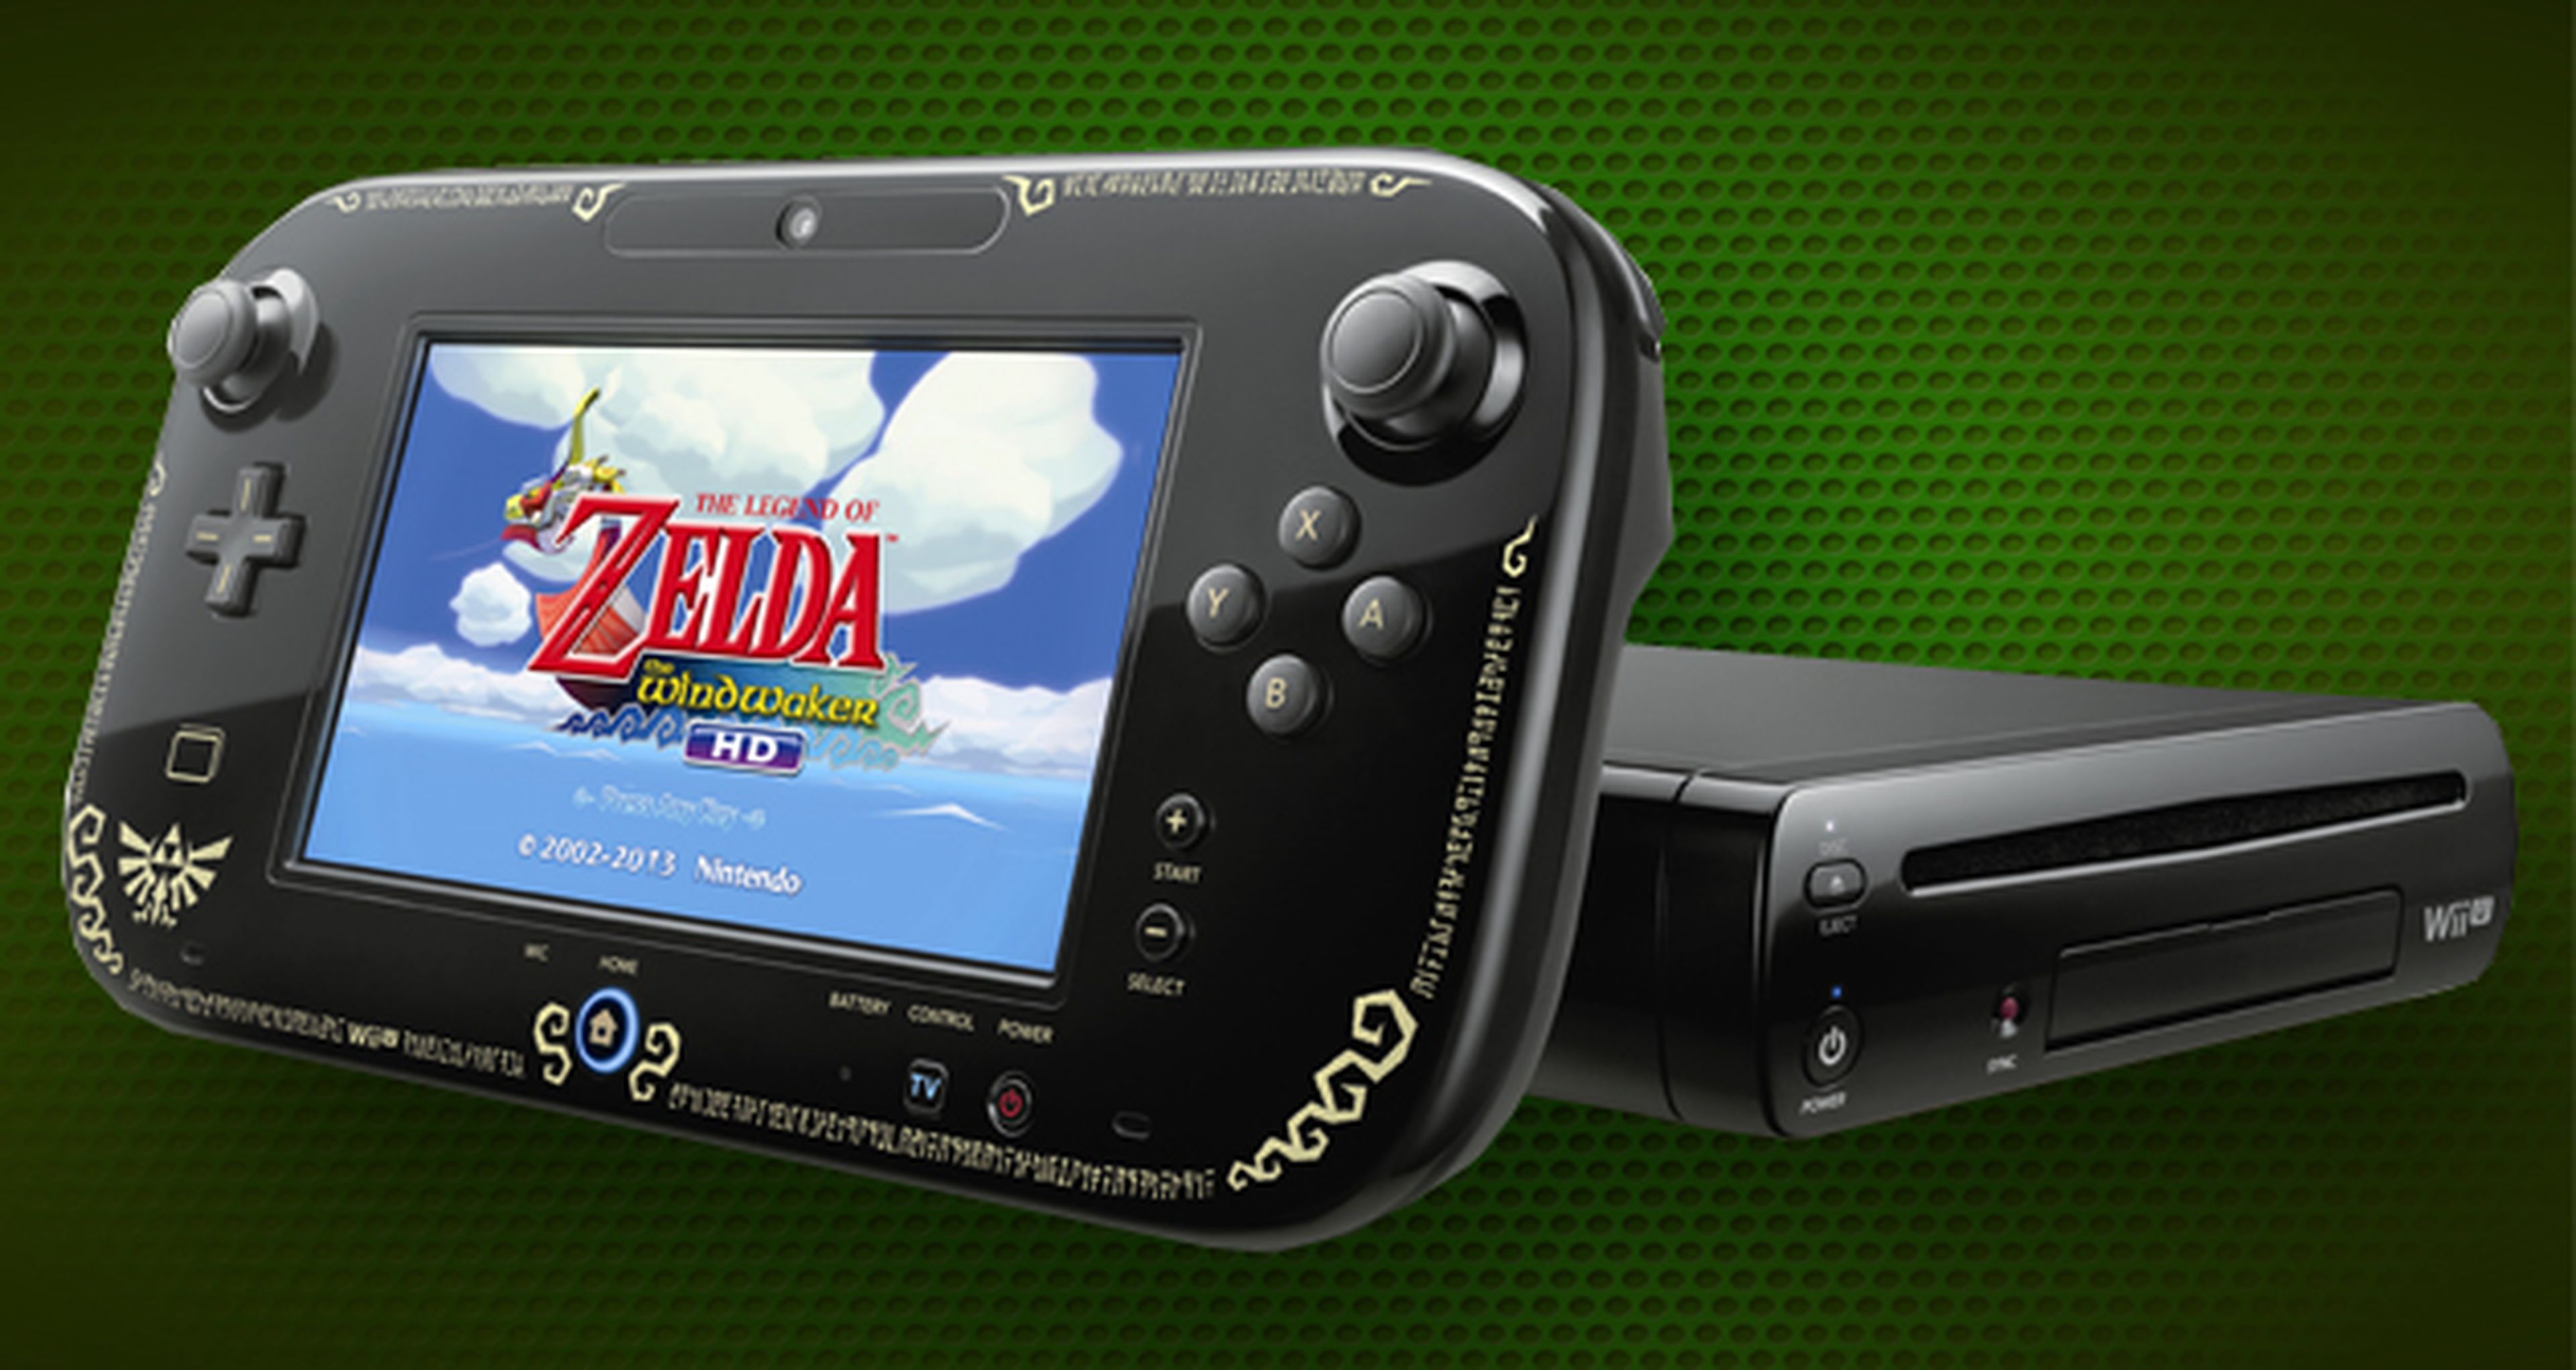 Concurso Zelda: Ganadores de 2 Wii U y 2 3DS